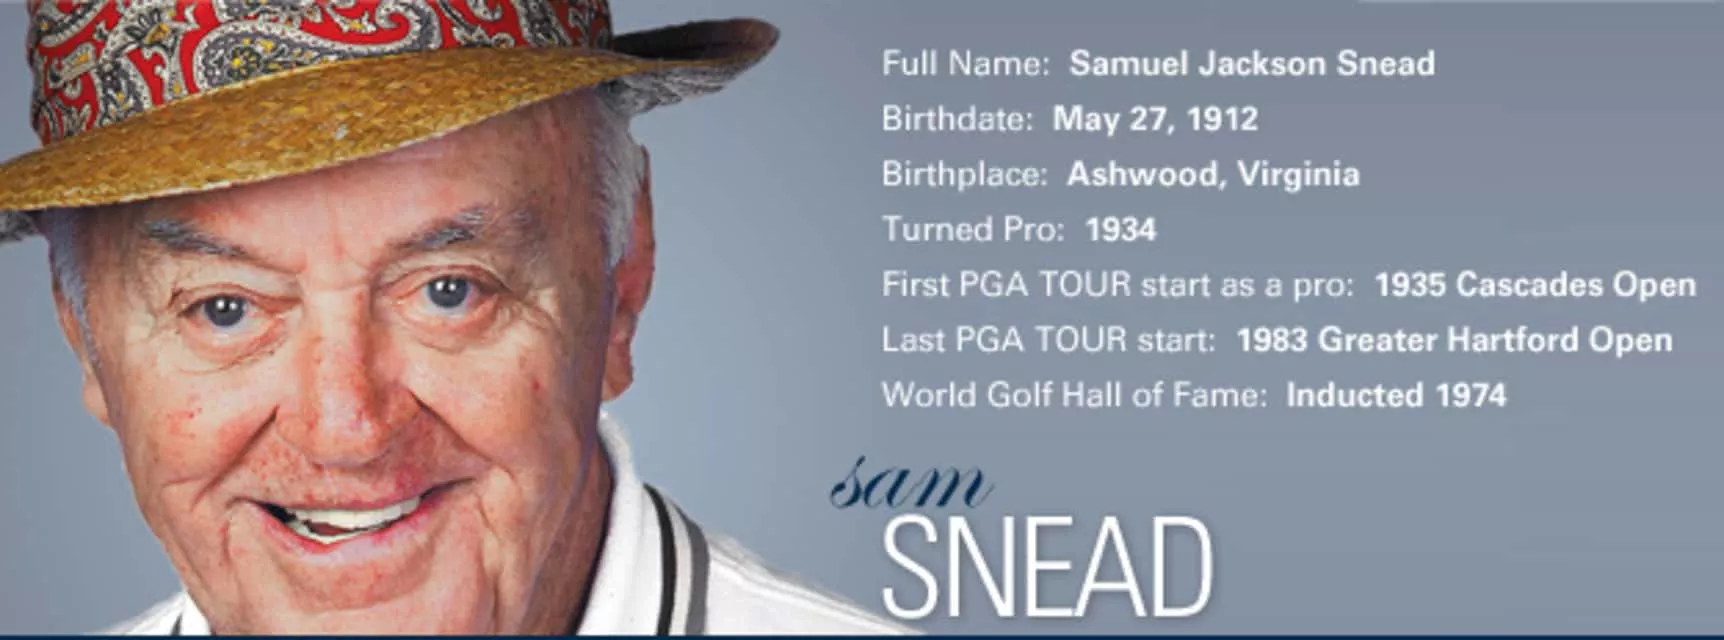 Sam Snead - American professional golfer